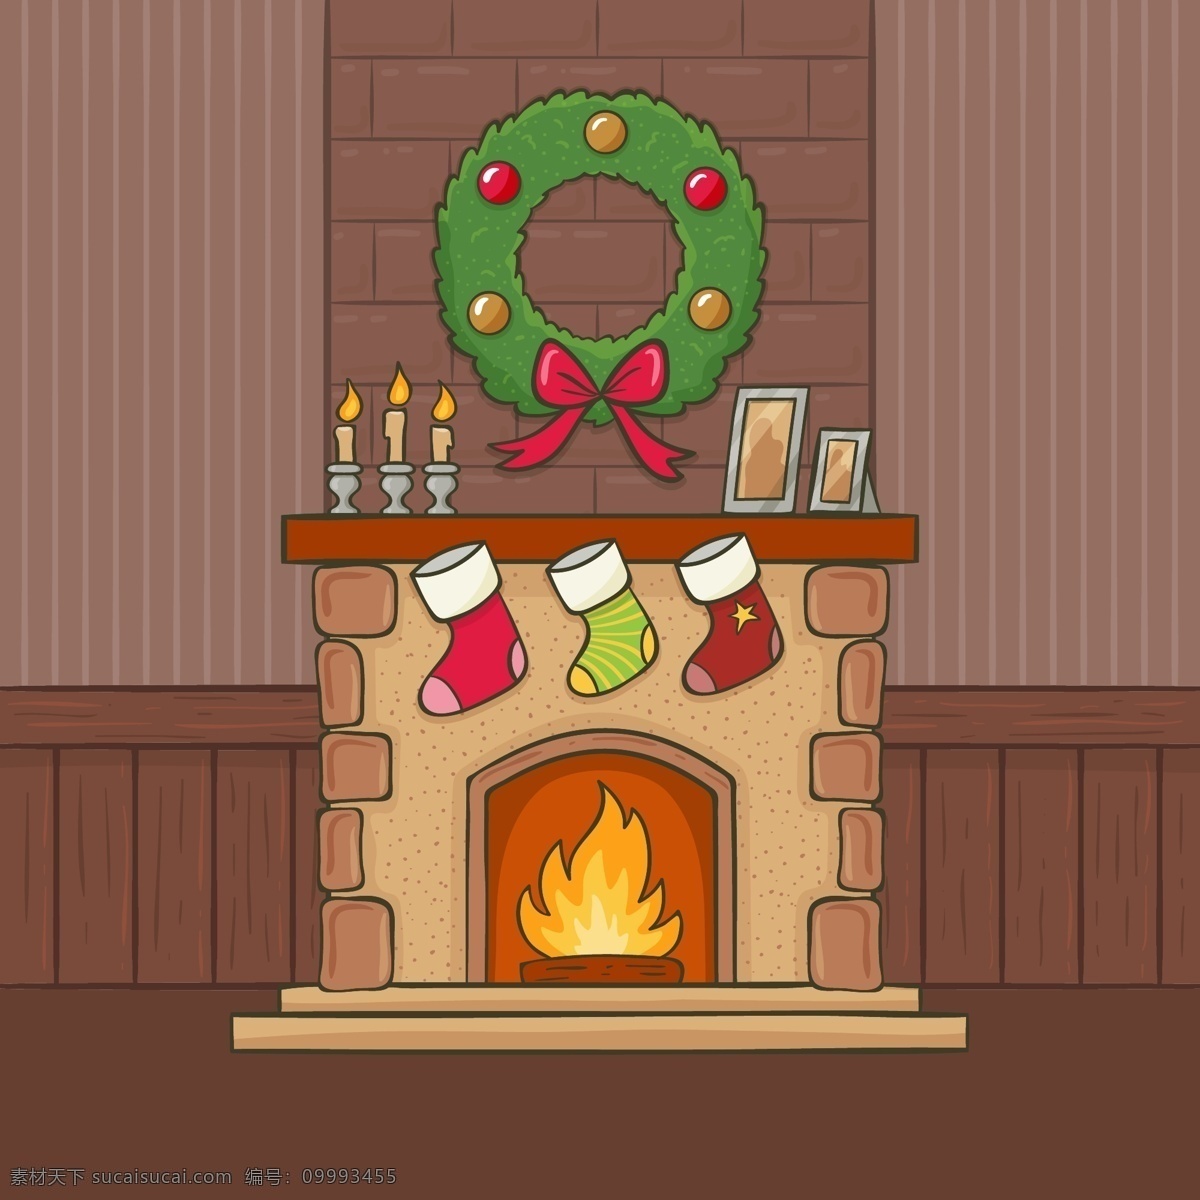 手绘 圣诞 壁炉 圣诞壁炉 手绘壁炉素材